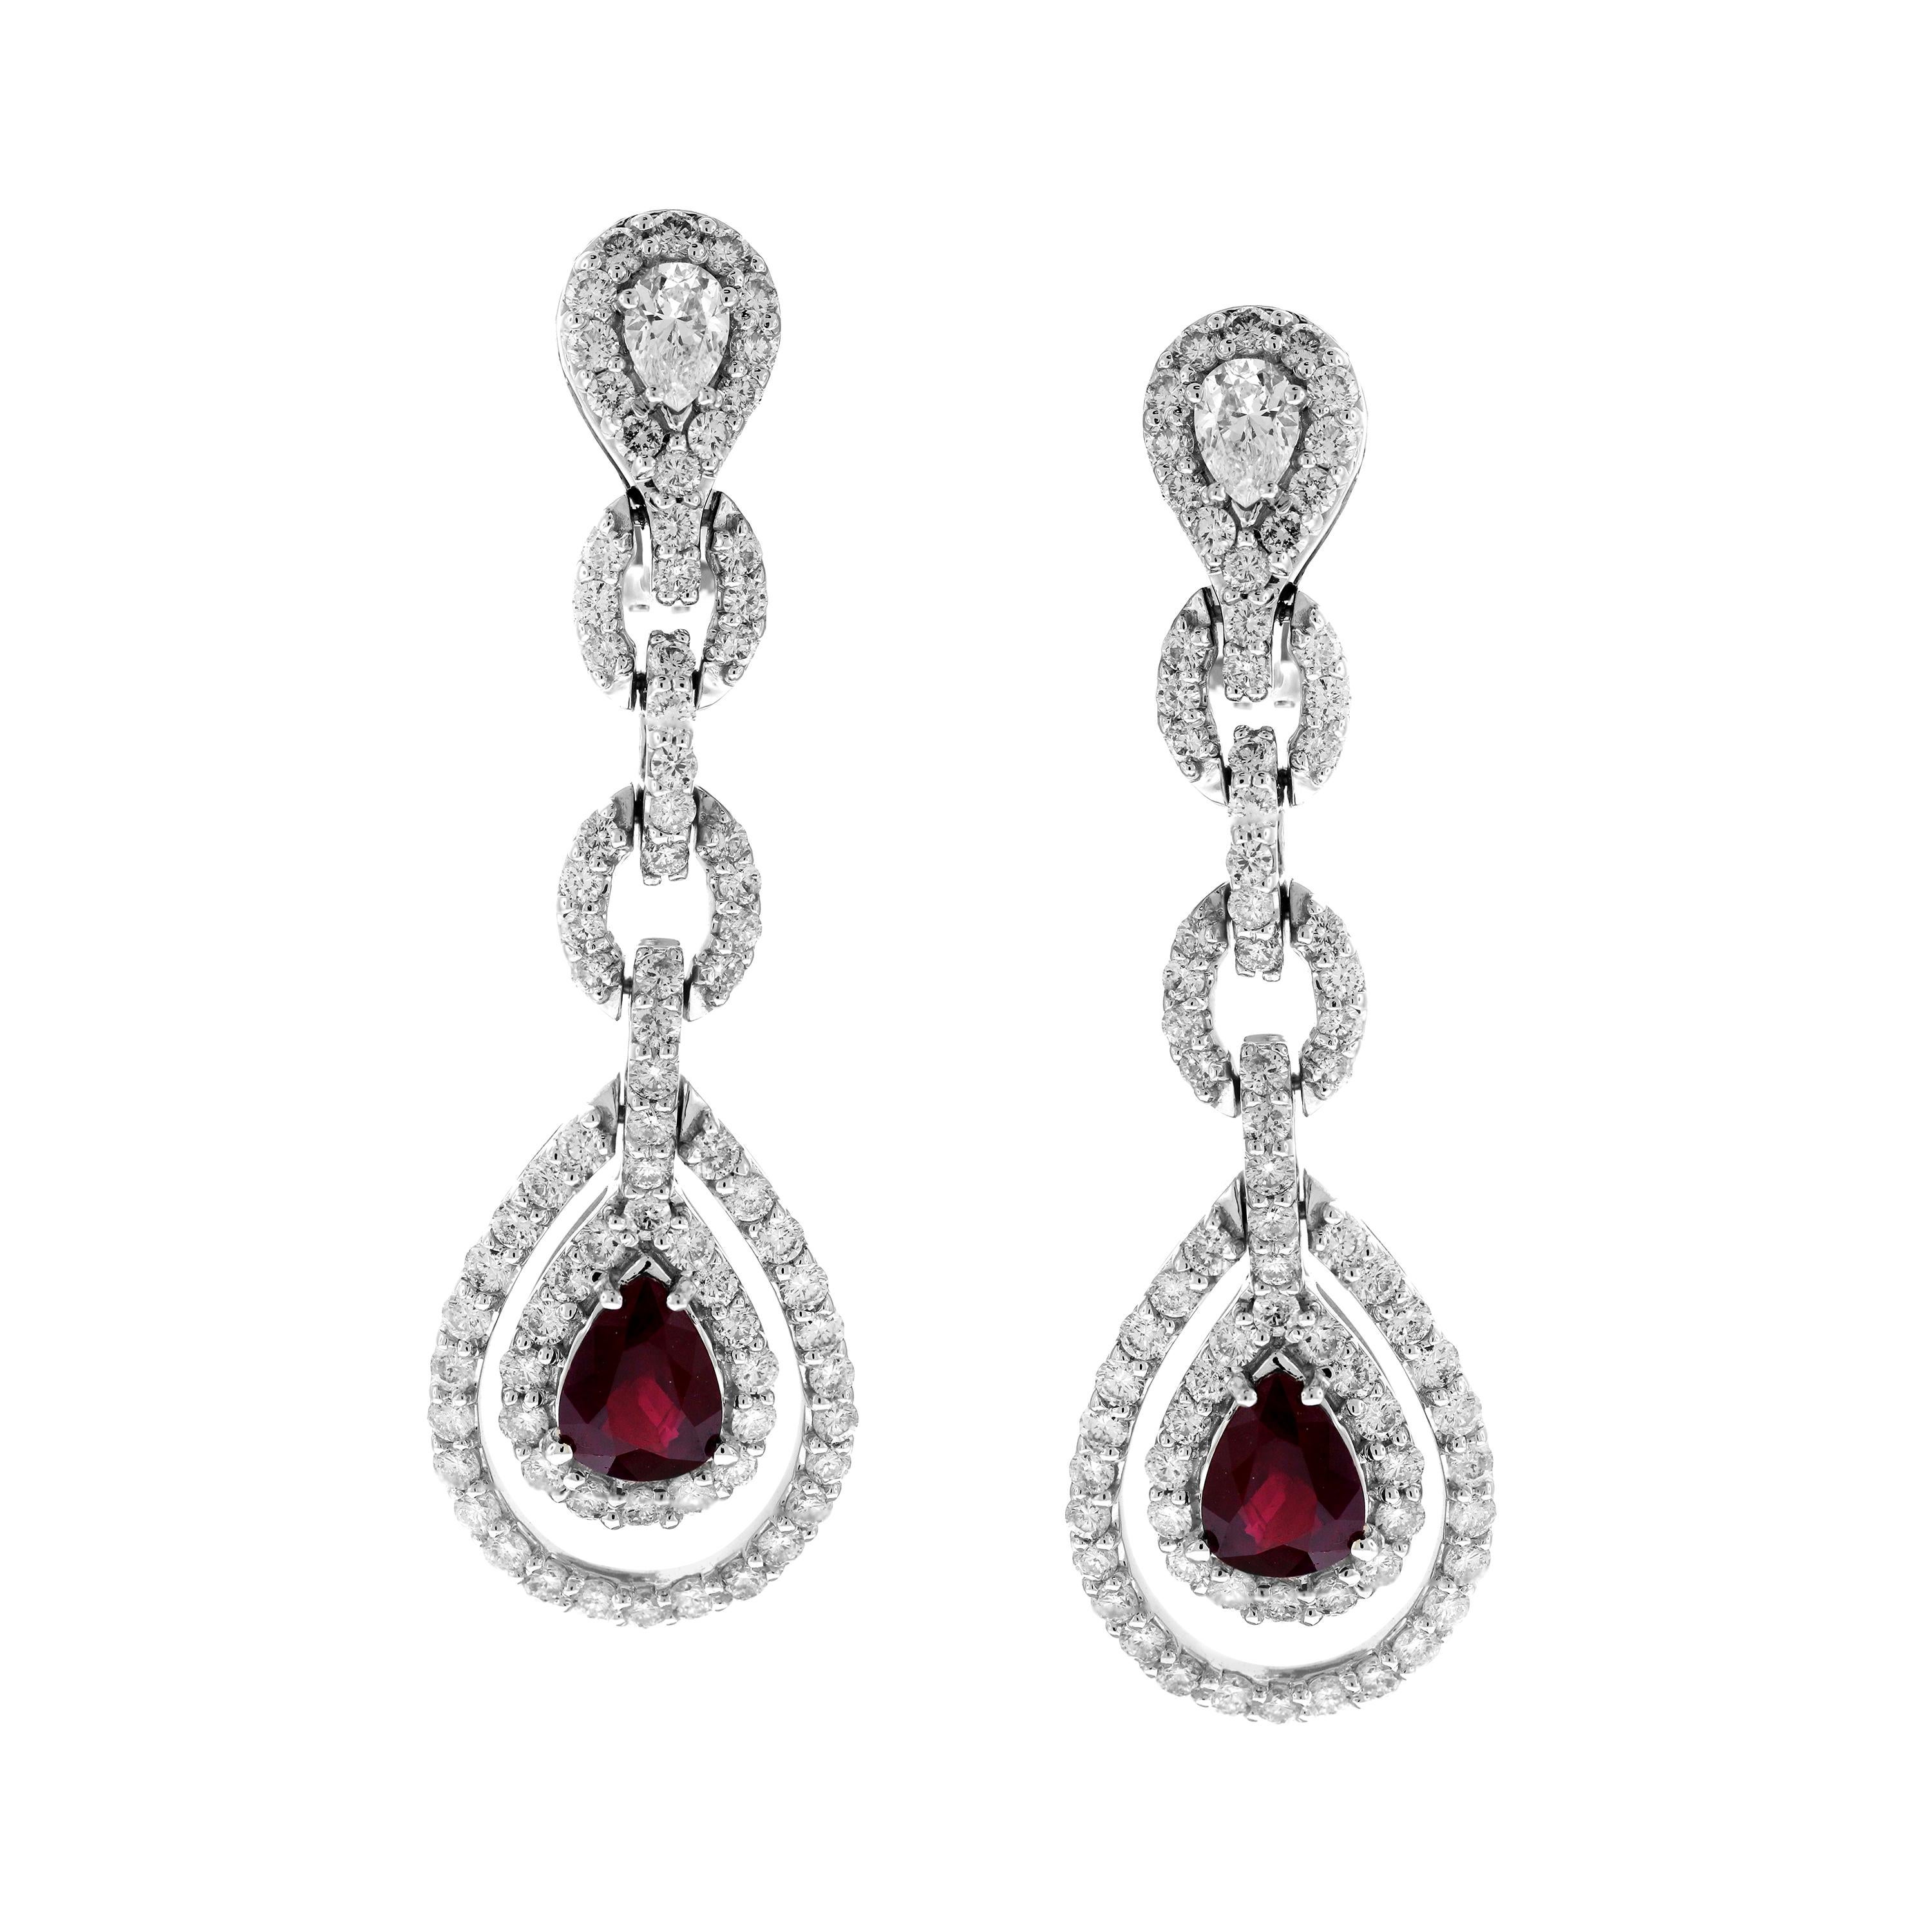 Boucles d'oreilles pendantes en or blanc 18 carats avec rubis et diamants en forme de poire